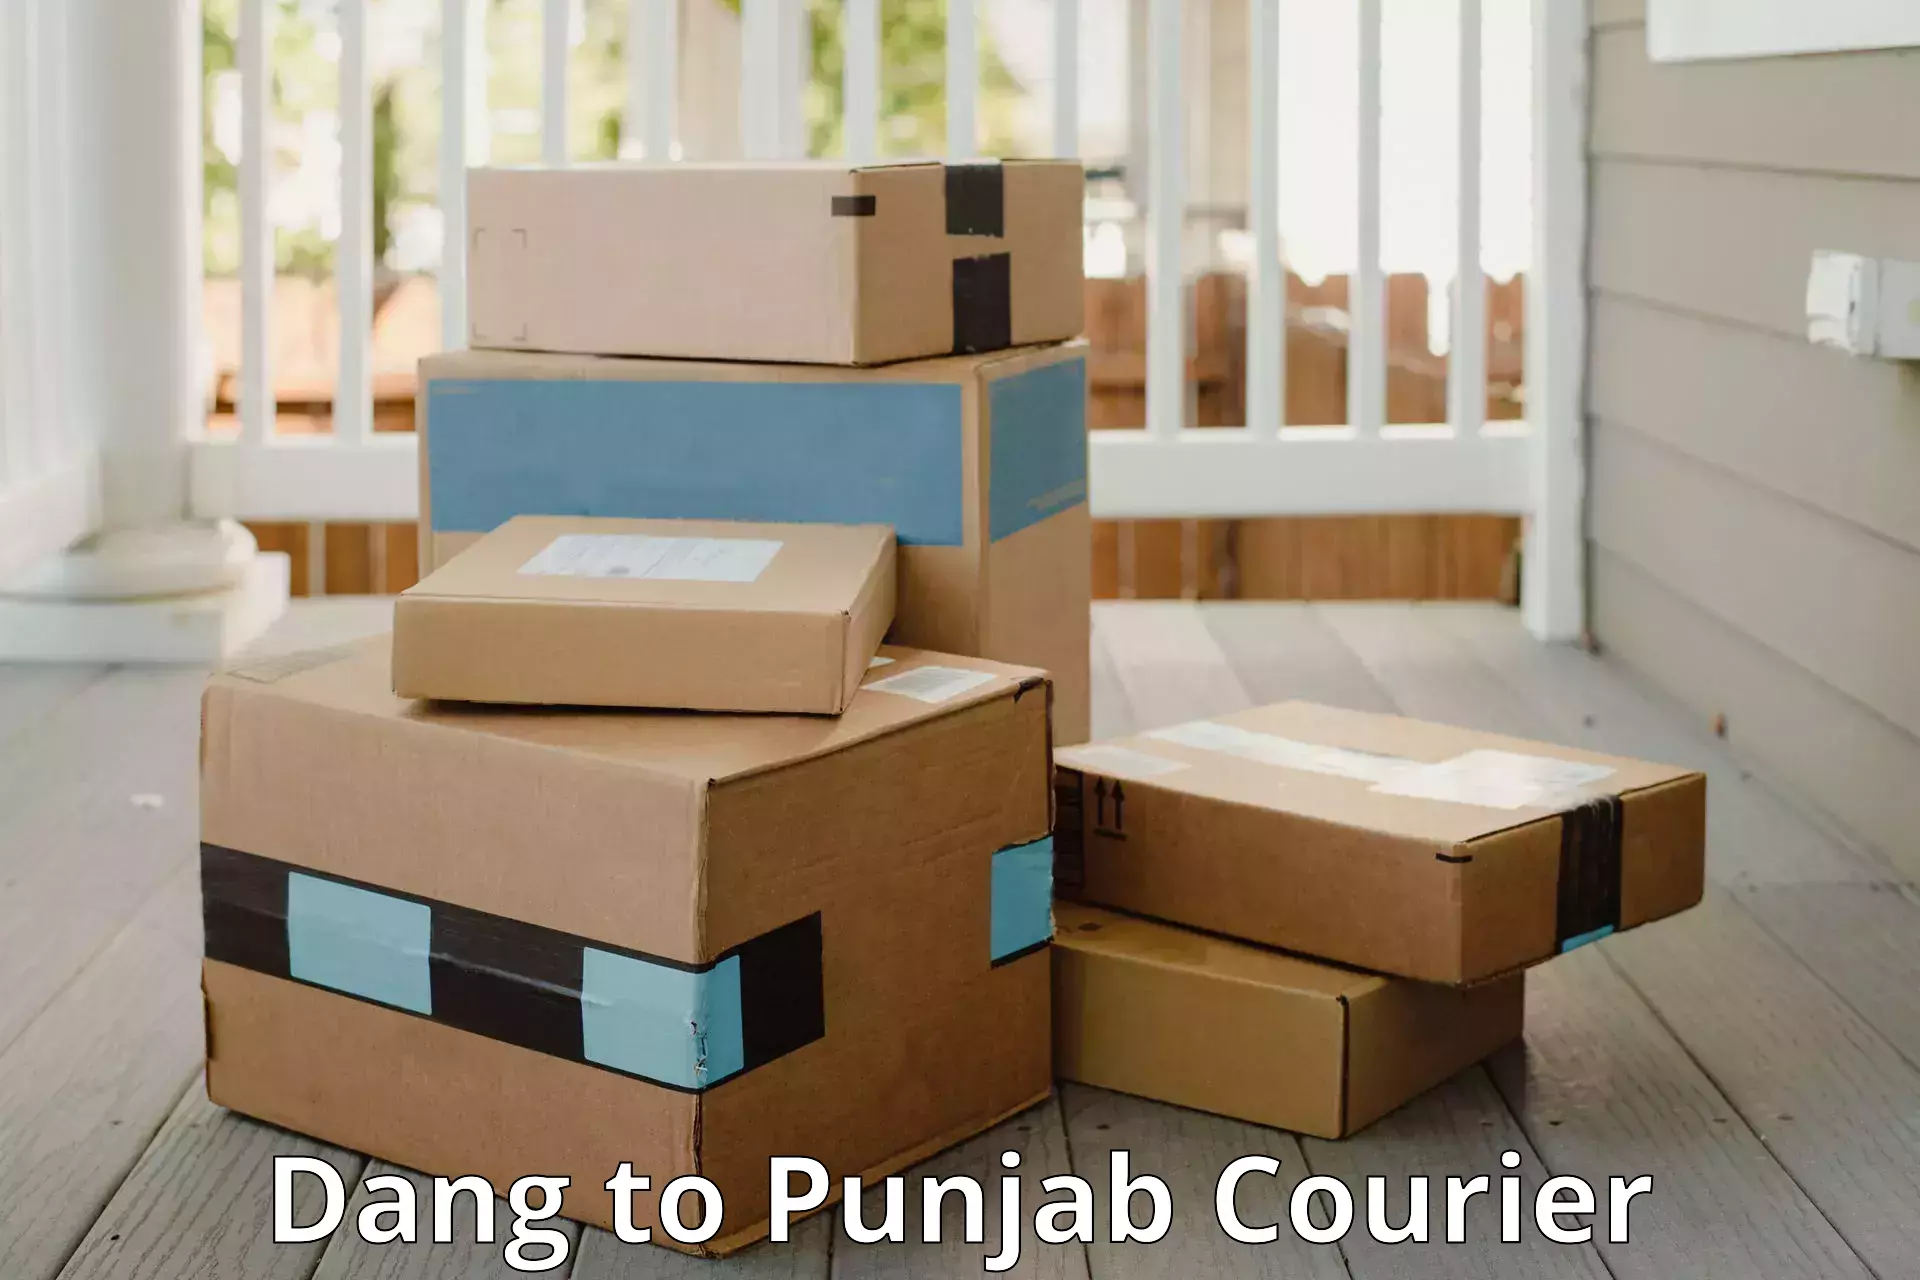 Luggage transport tips Dang to Punjab